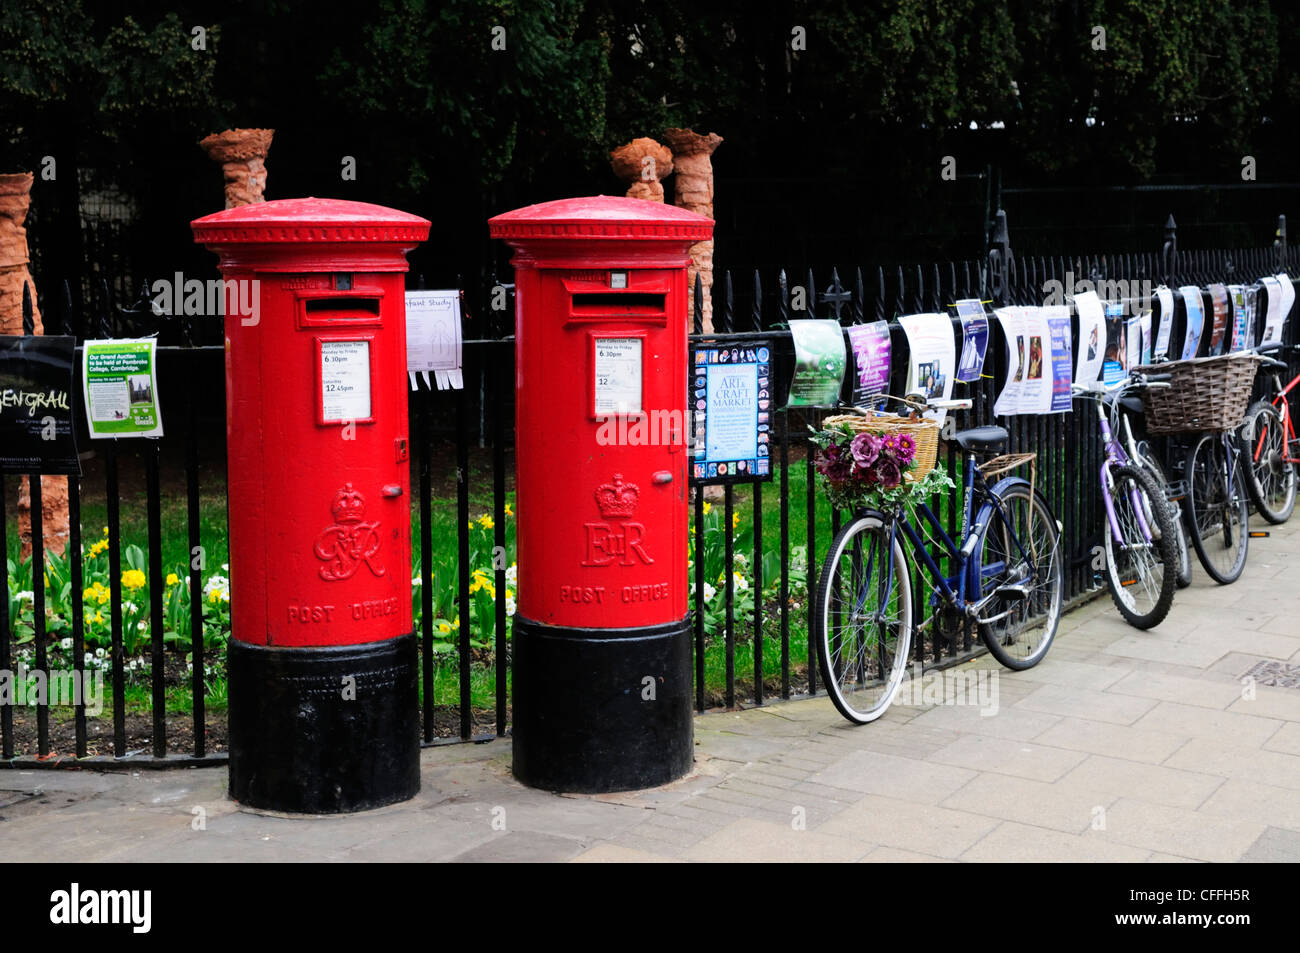 Caselle di posta e biciclette, la piazza del mercato, Cambridge, Inghilterra, Regno Unito Foto Stock